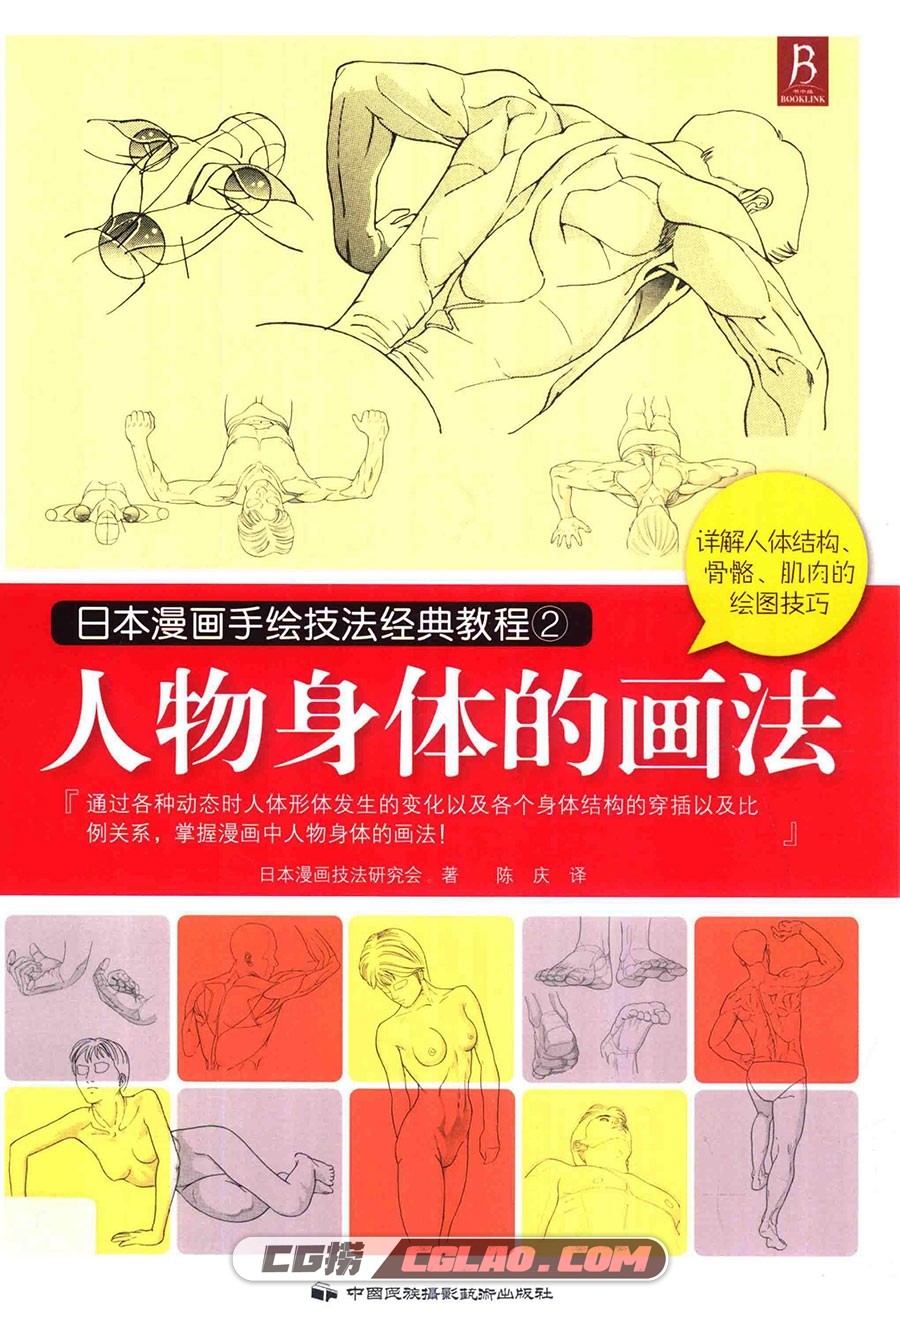 日本漫画手绘技法经典教程02 人物身体的画法教程PDF 百度云,日本漫画手绘技法经典教程02人物身体的画法001.jpg